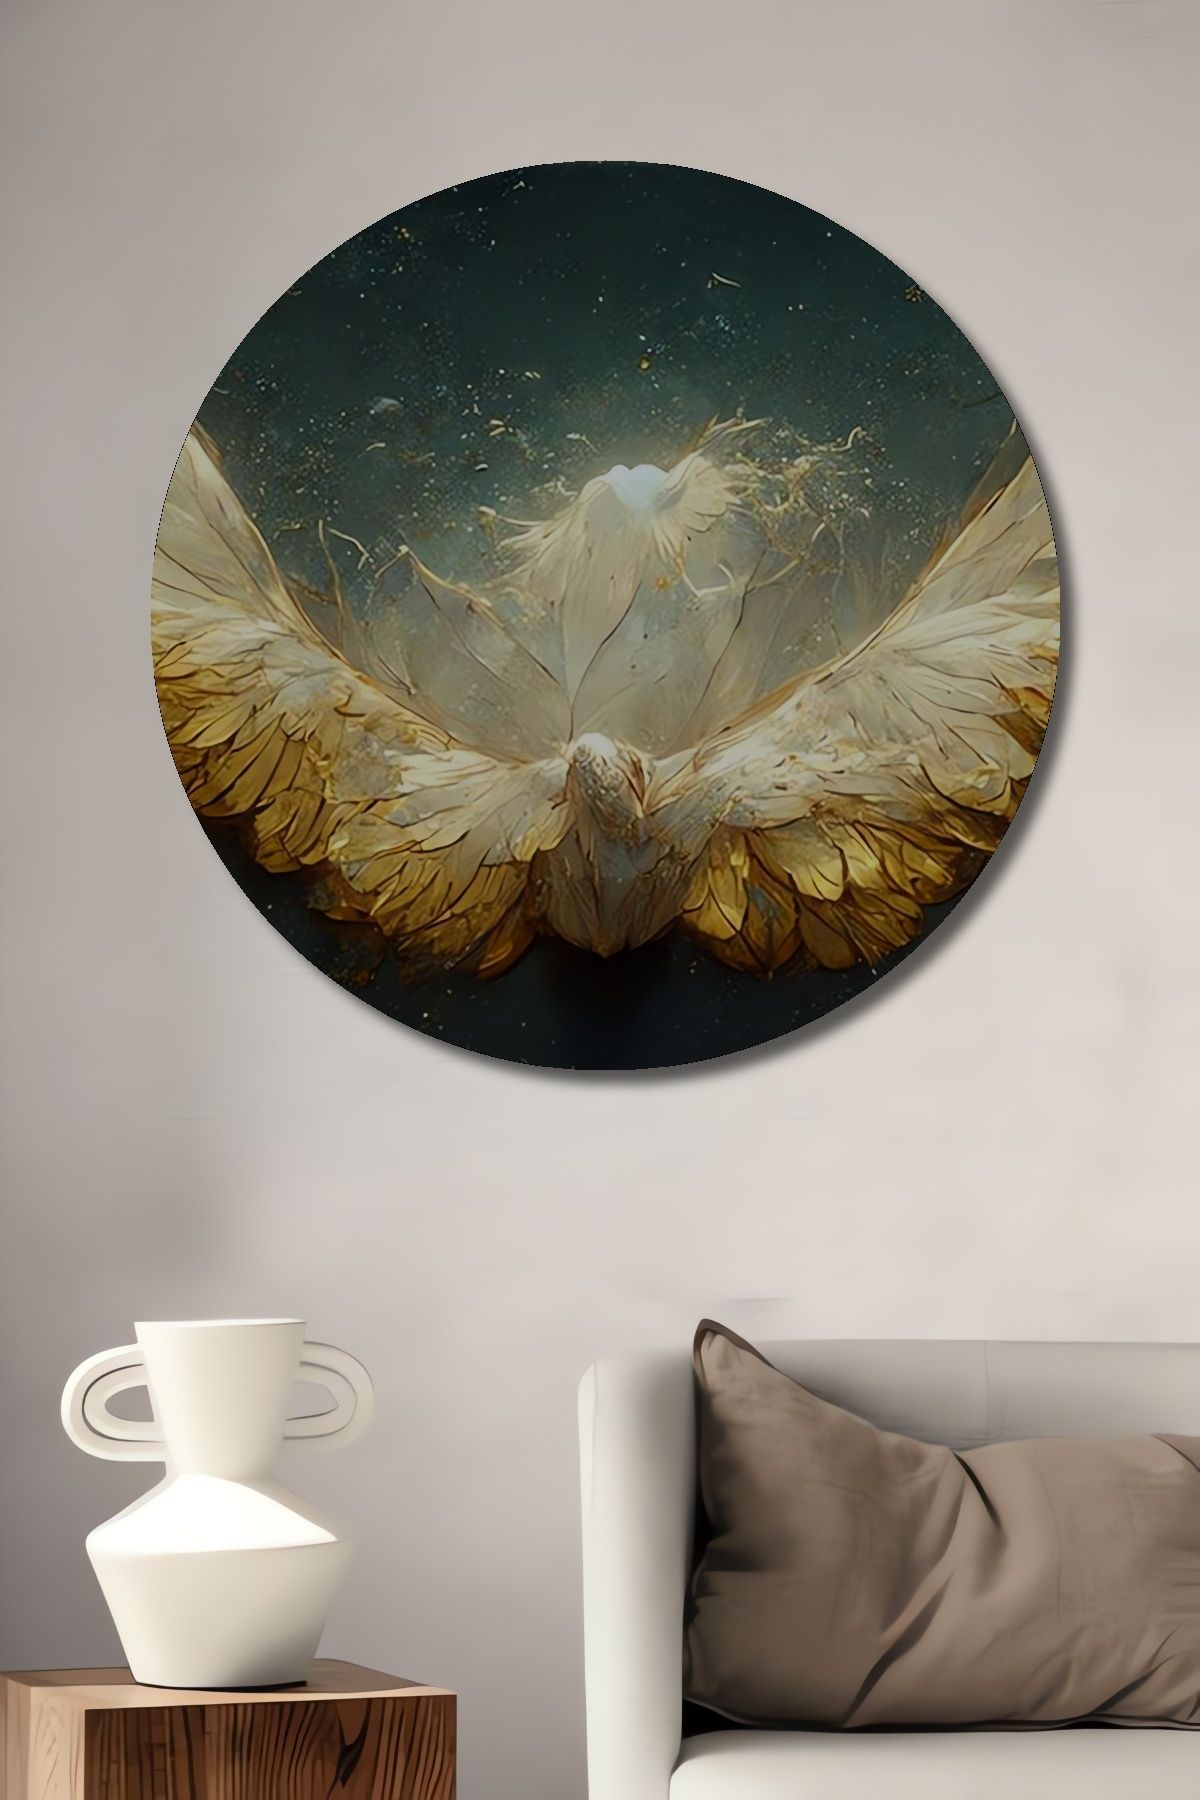 Teona Ahşap Sürrealist Tasarım Altın Kanatlı Beyaz Güvercin Ahşap Tablo Şık Yuvarlak Duvar Dekorasyon Tablosu